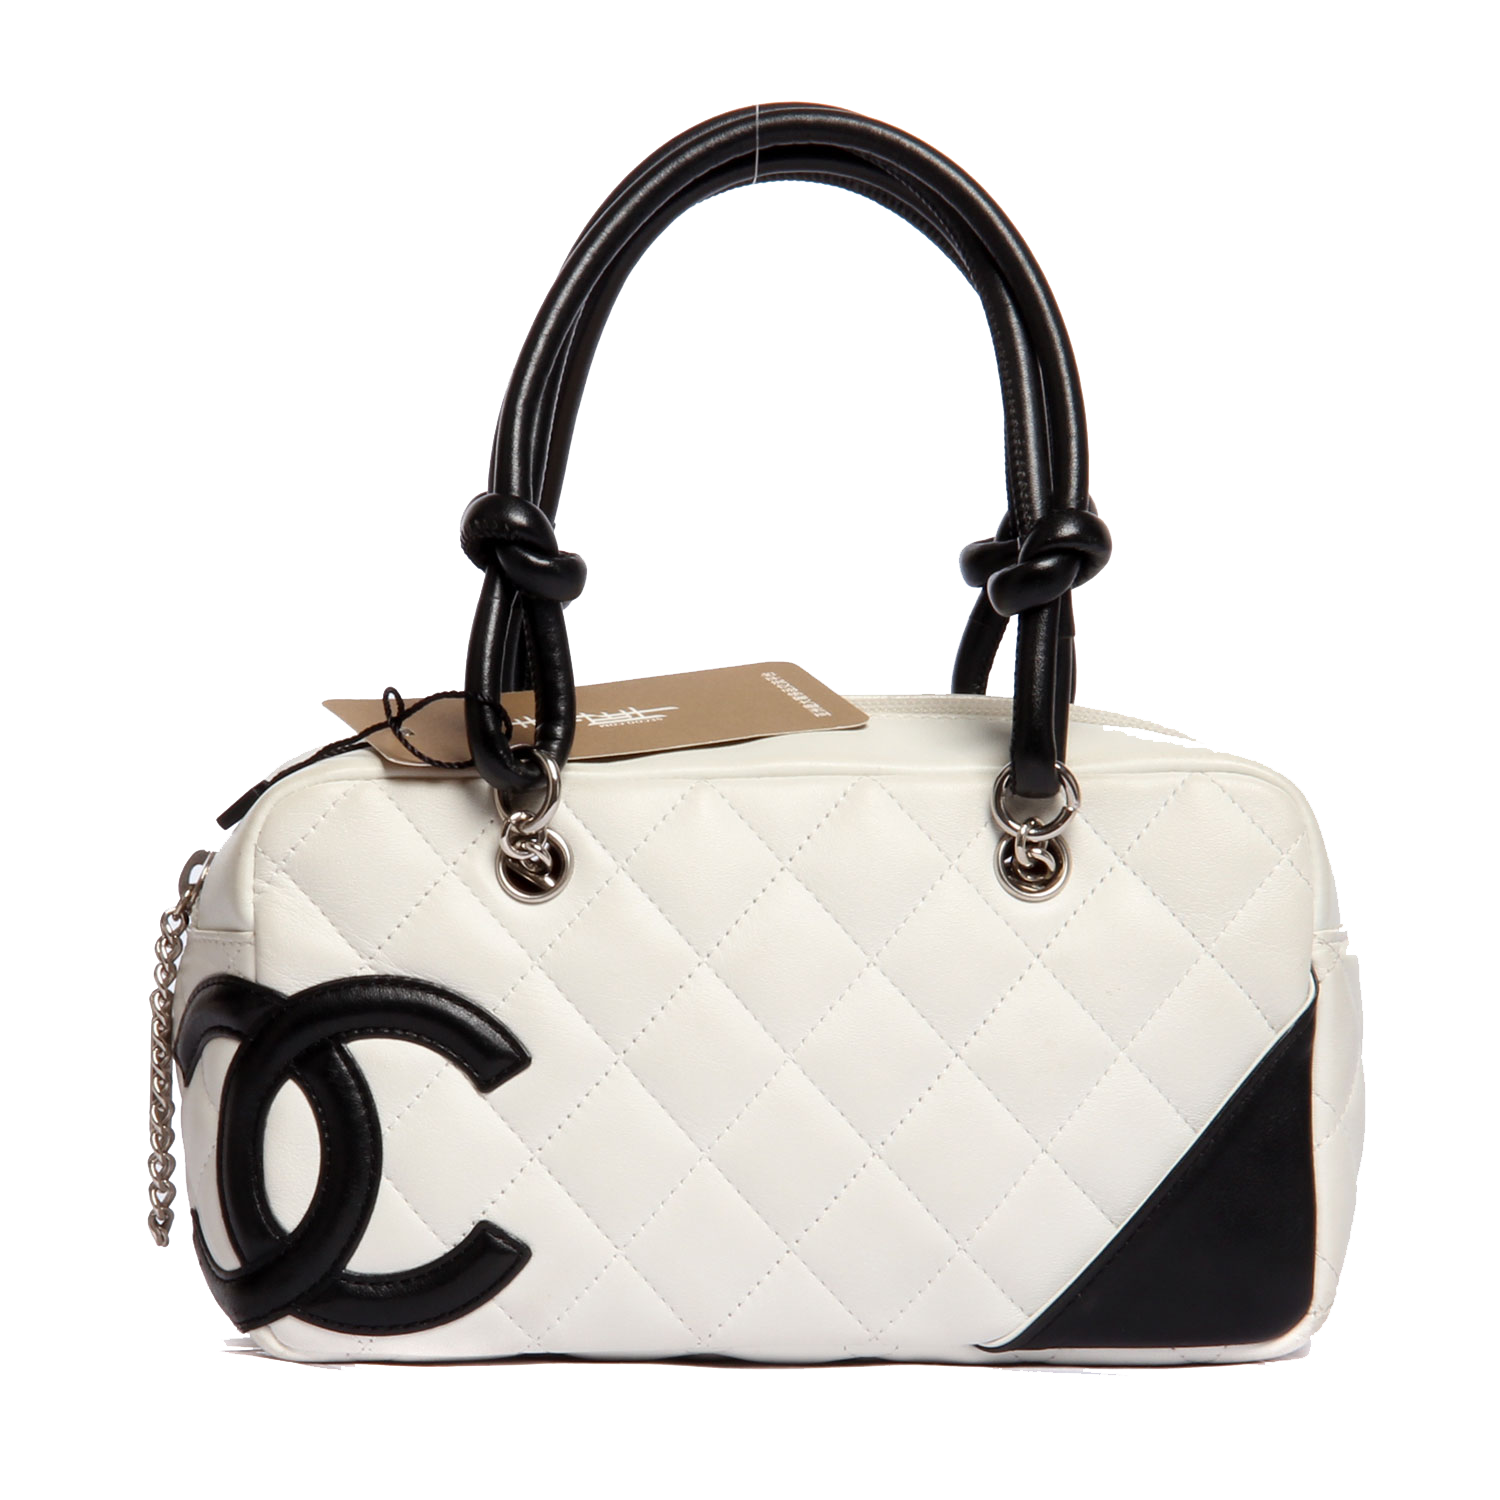 Shop Beautxc9 Maes Handbag Chanel Download HD PNG Clipart